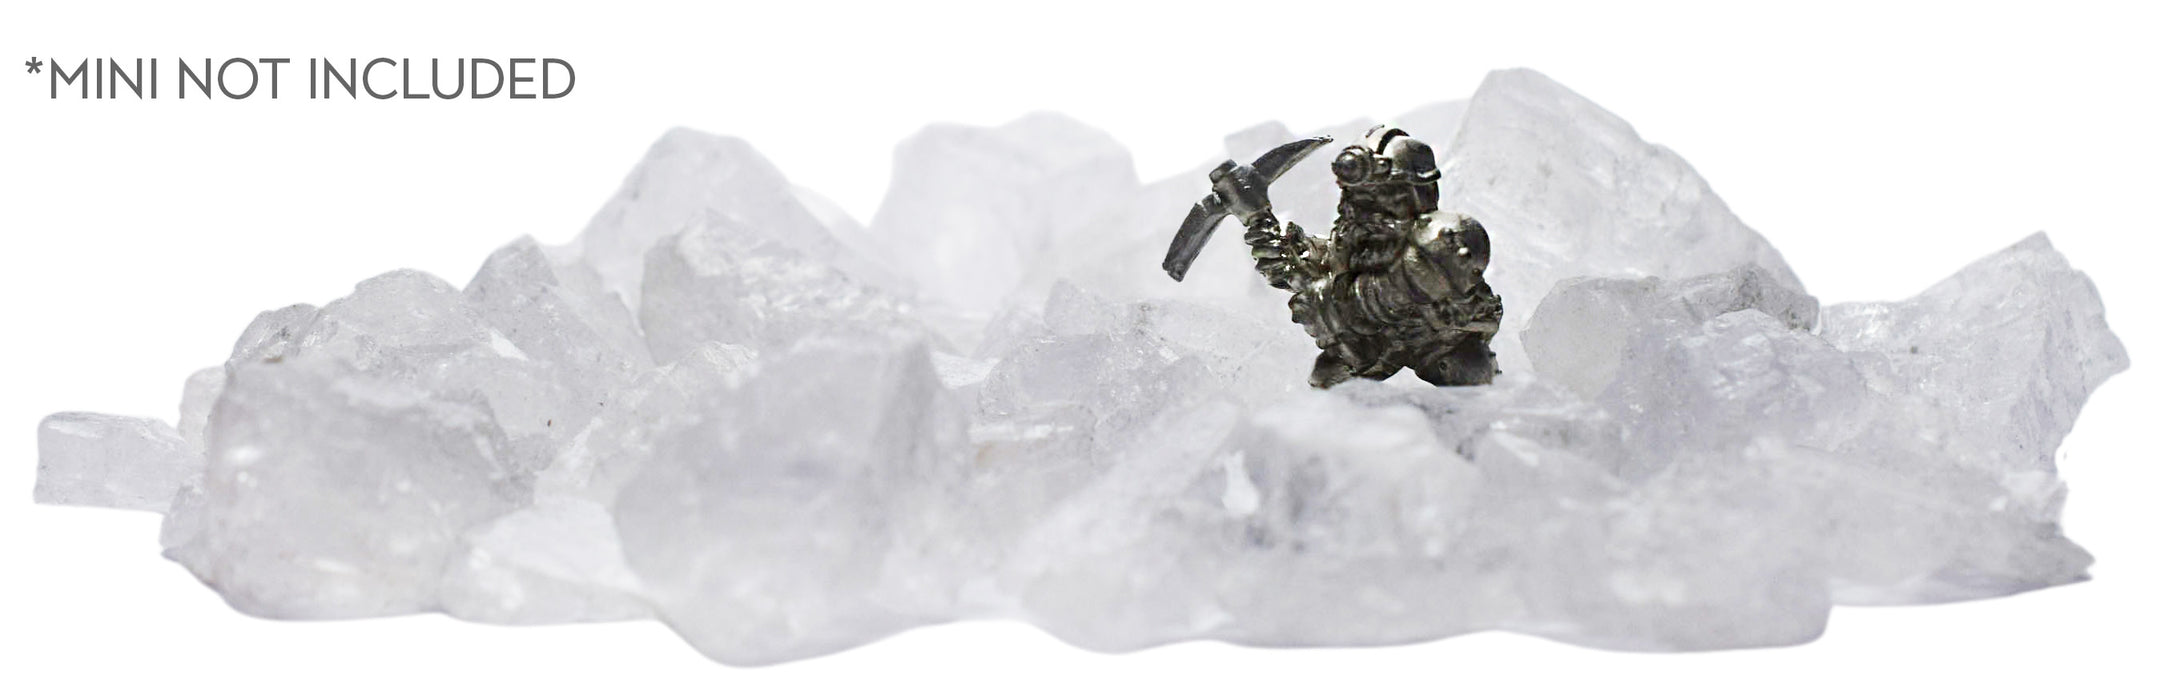 Rock/Boulder Set, Large - Halite, for Miniatures, D&D, and Warhammer